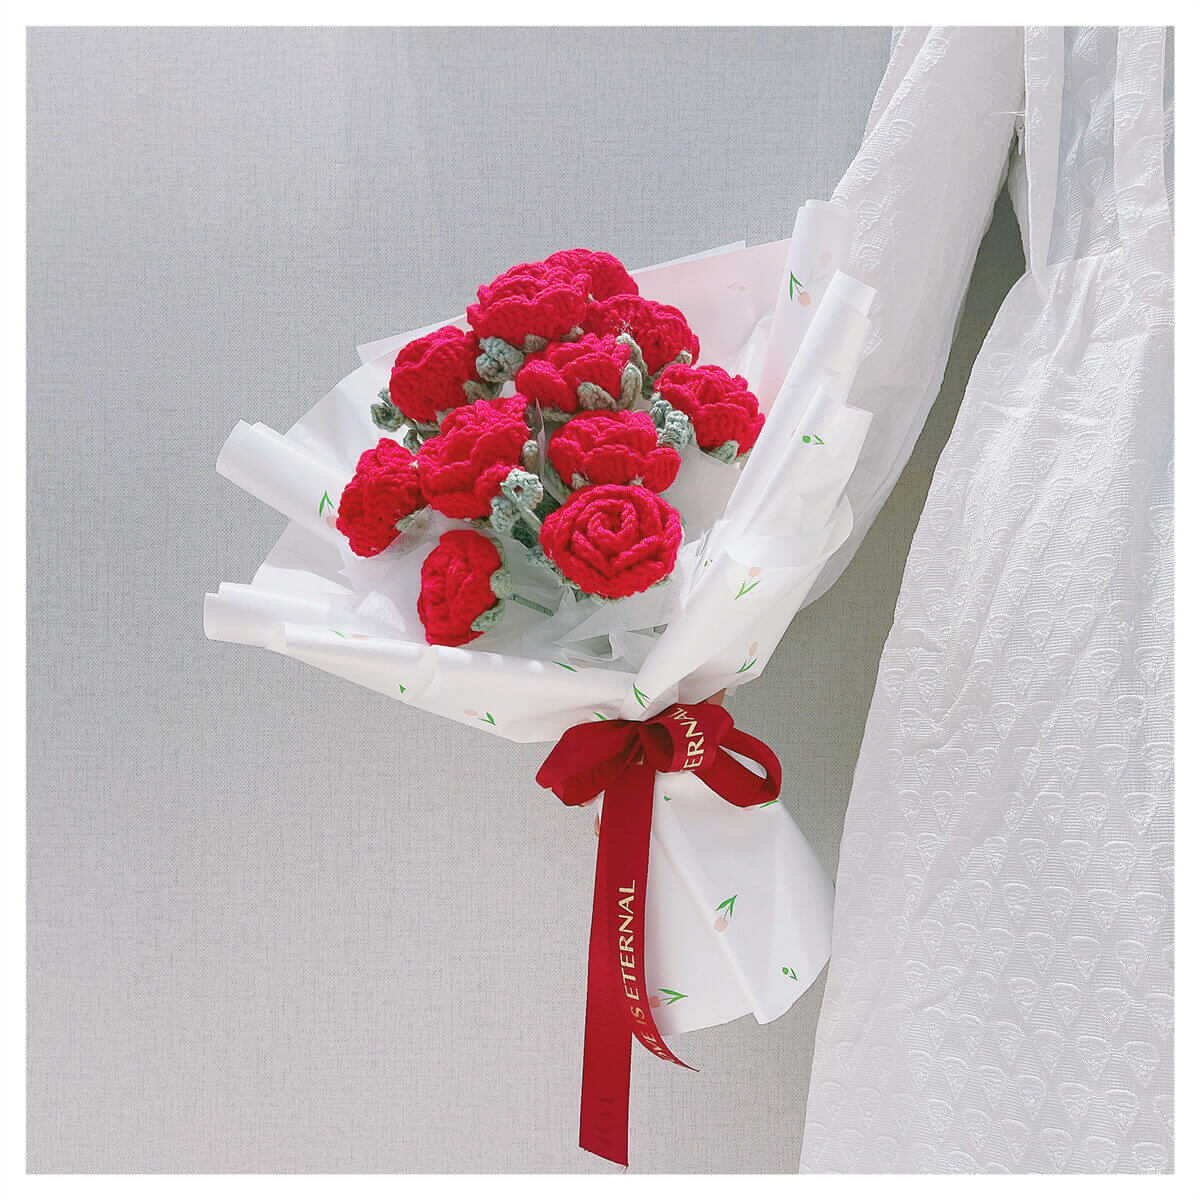 Crochet Rose Bouquet Free Pattern, Handmade Bouquet